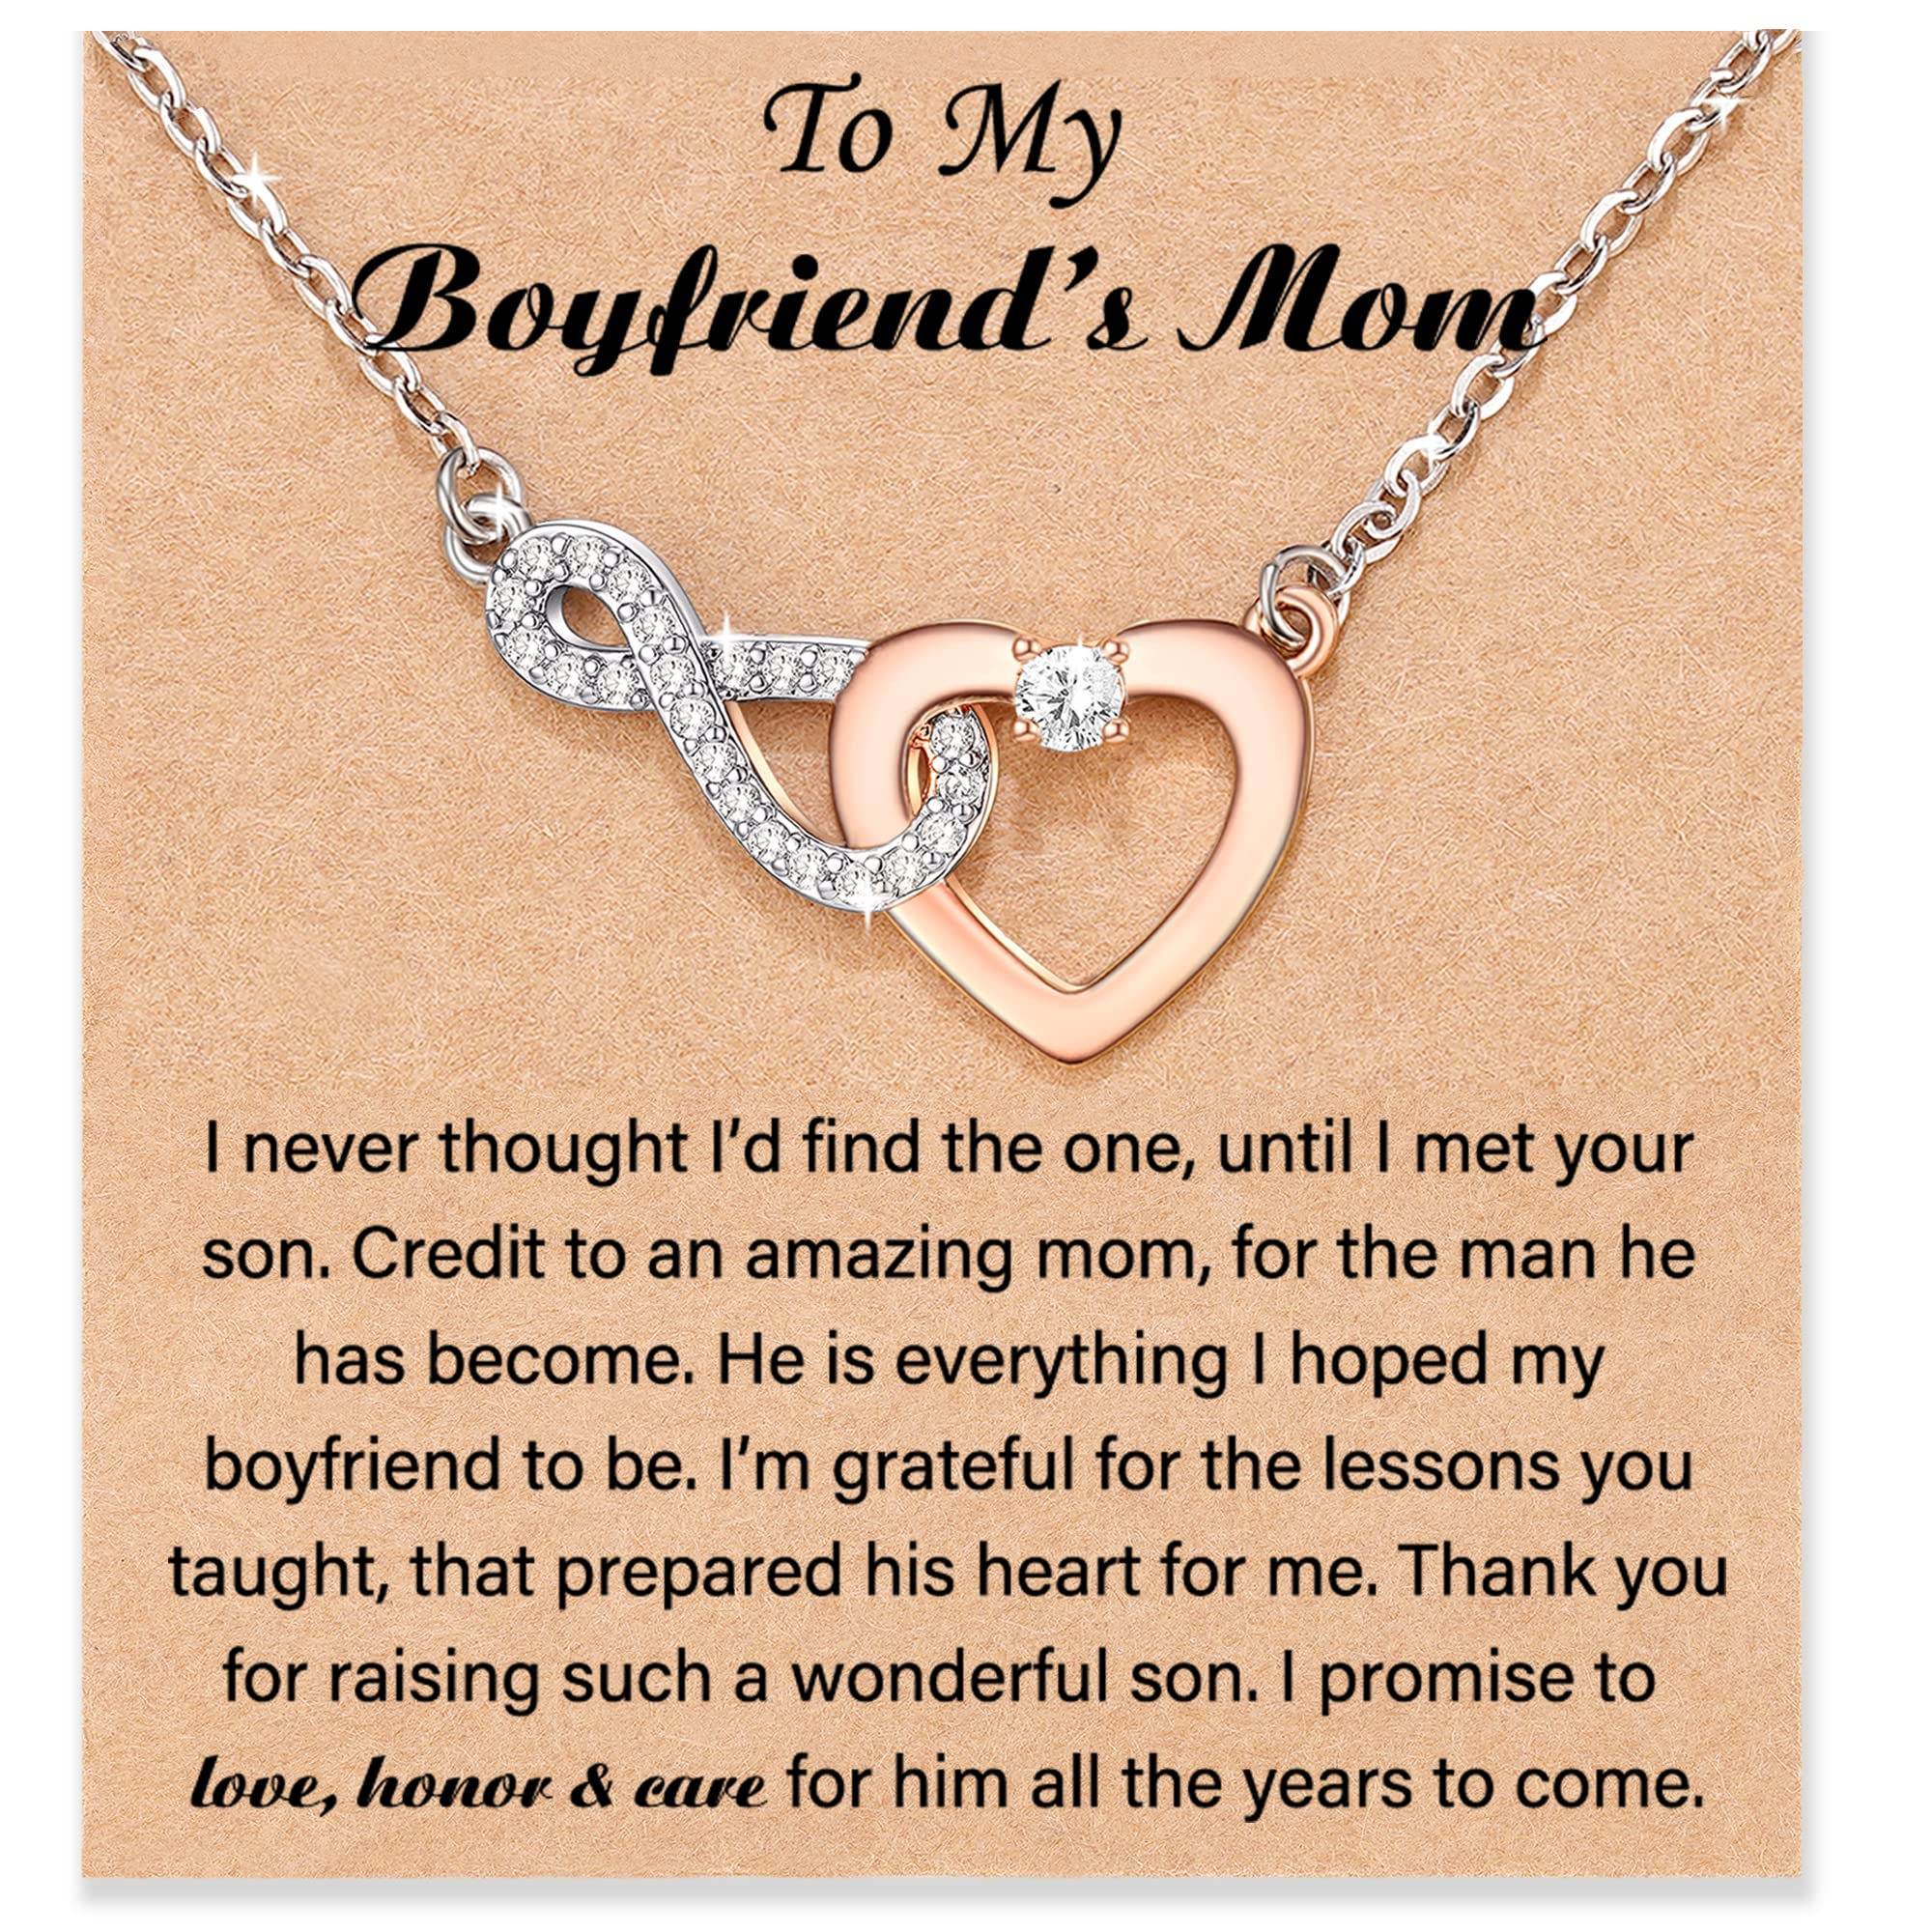 To boyfriend's mom